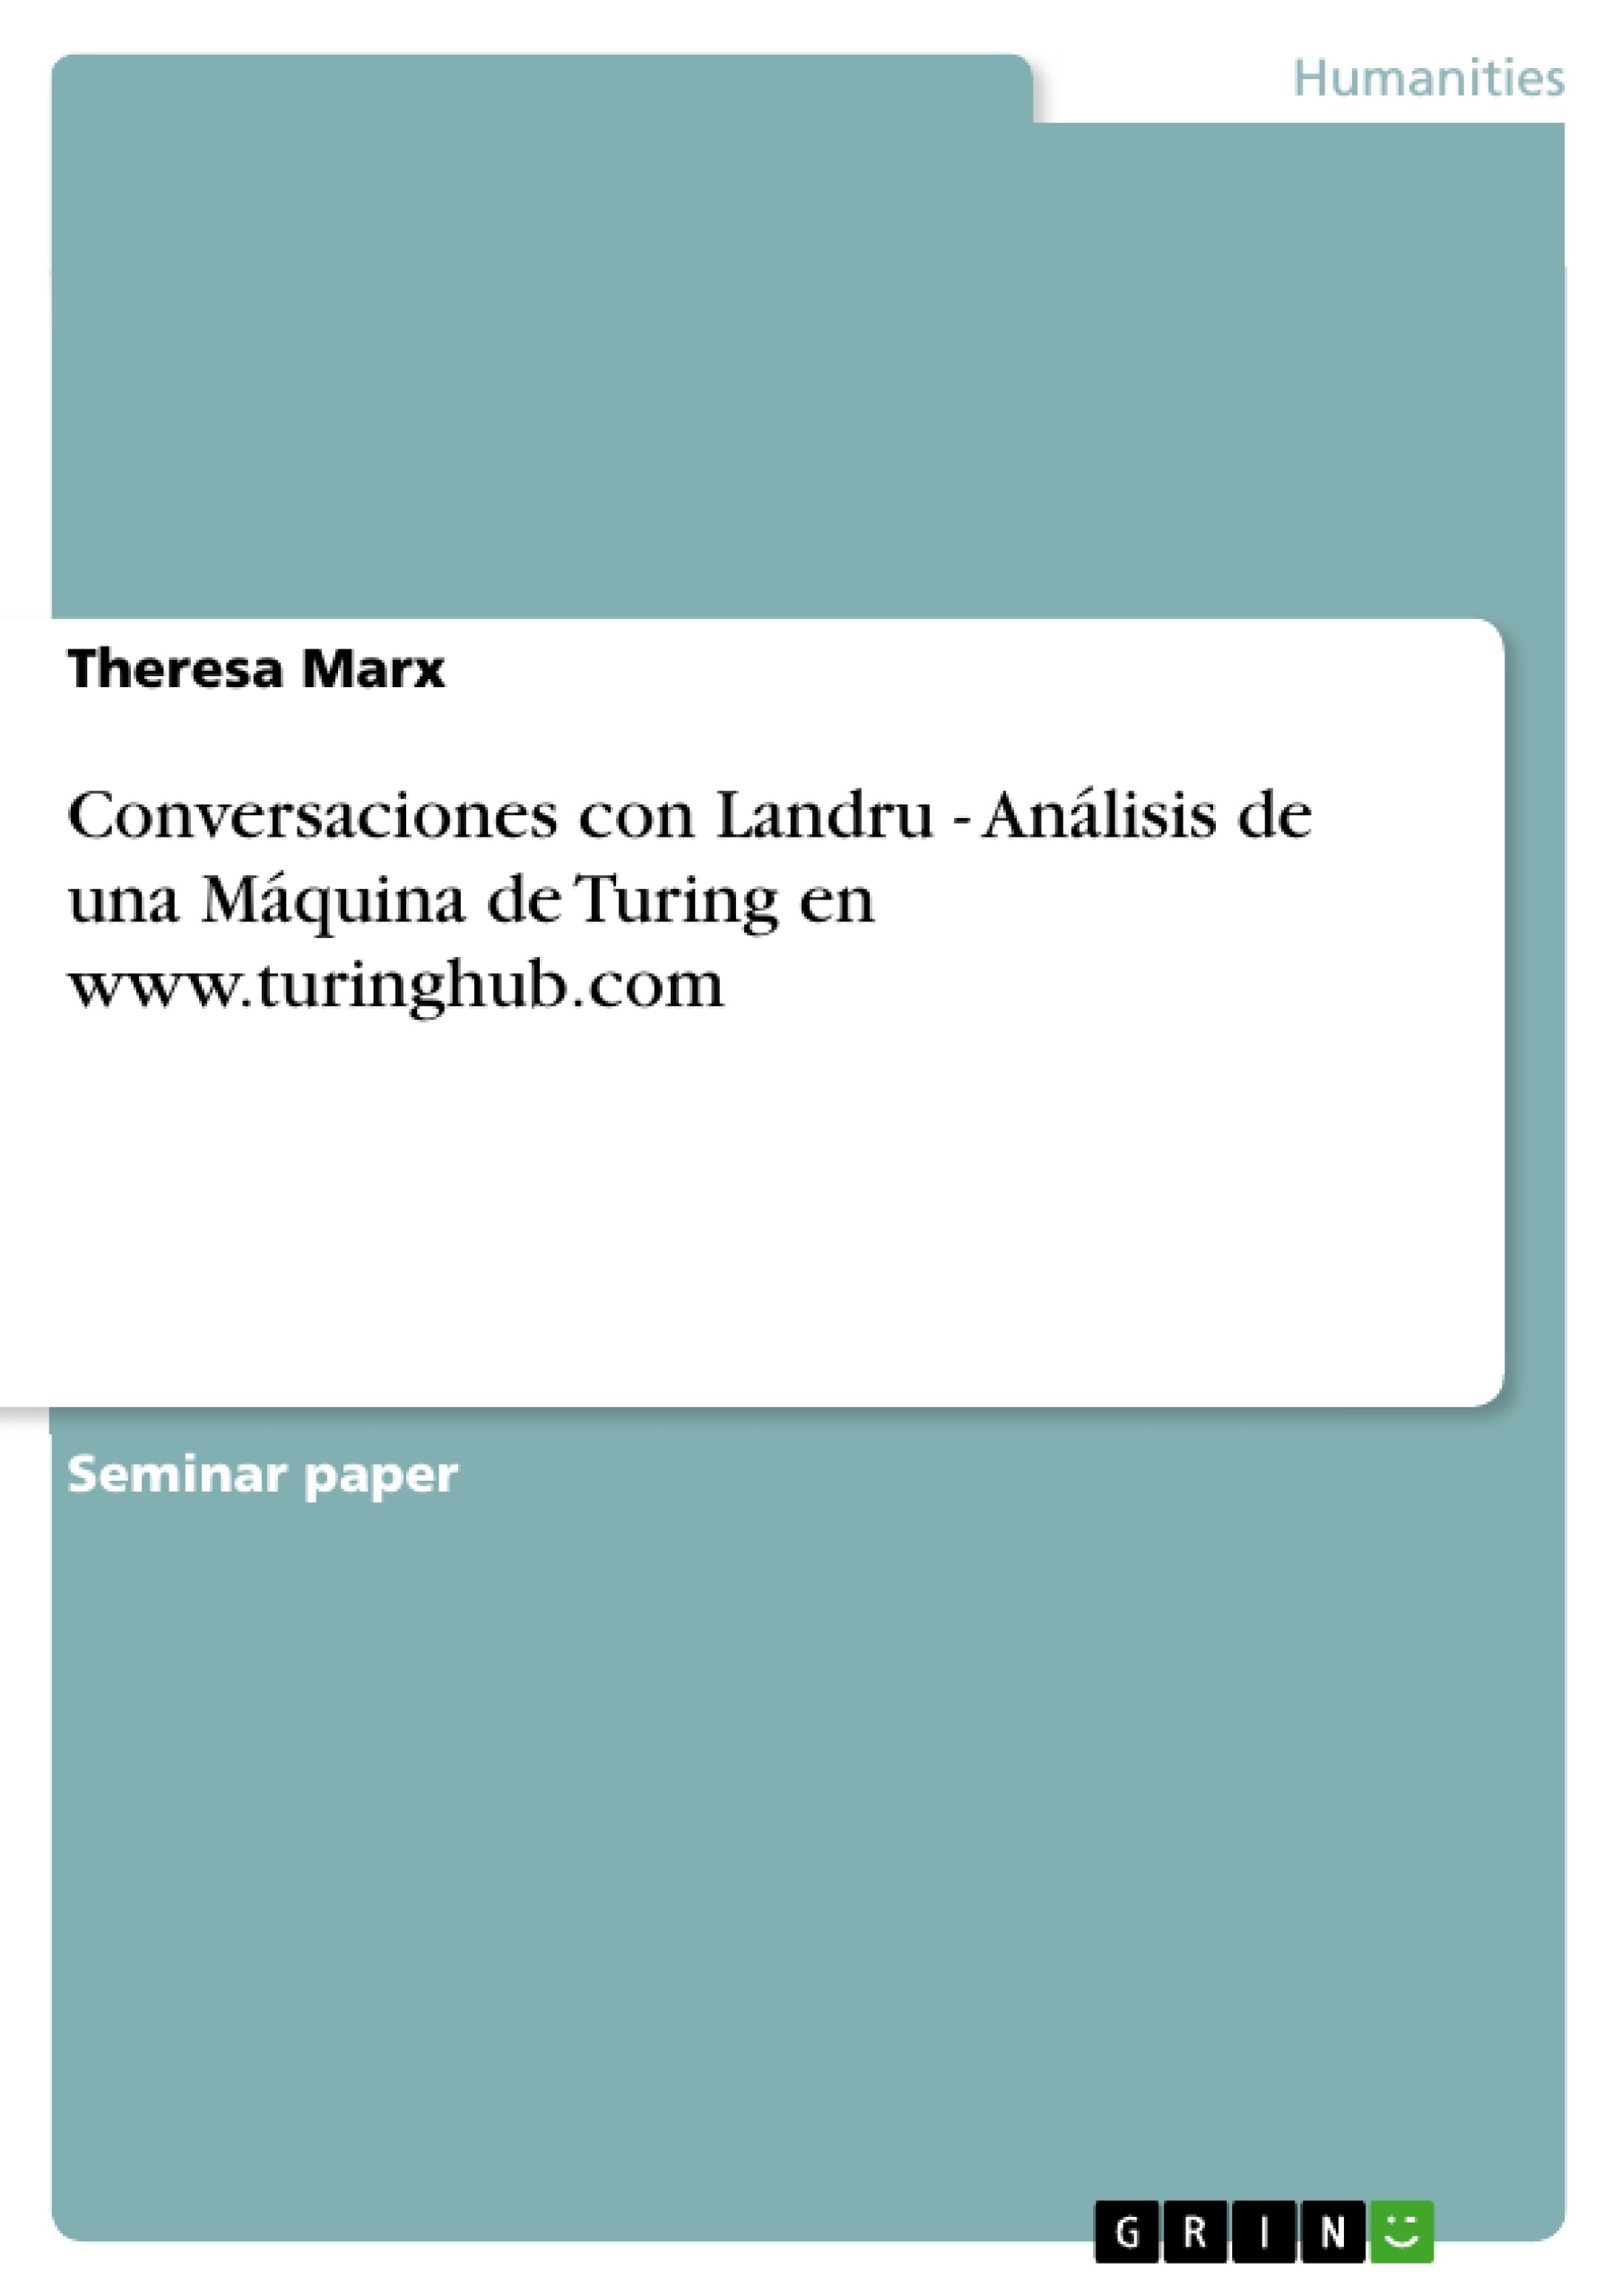 Title: Conversaciones con Landru - Análisis de una Máquina de Turing en www.turinghub.com